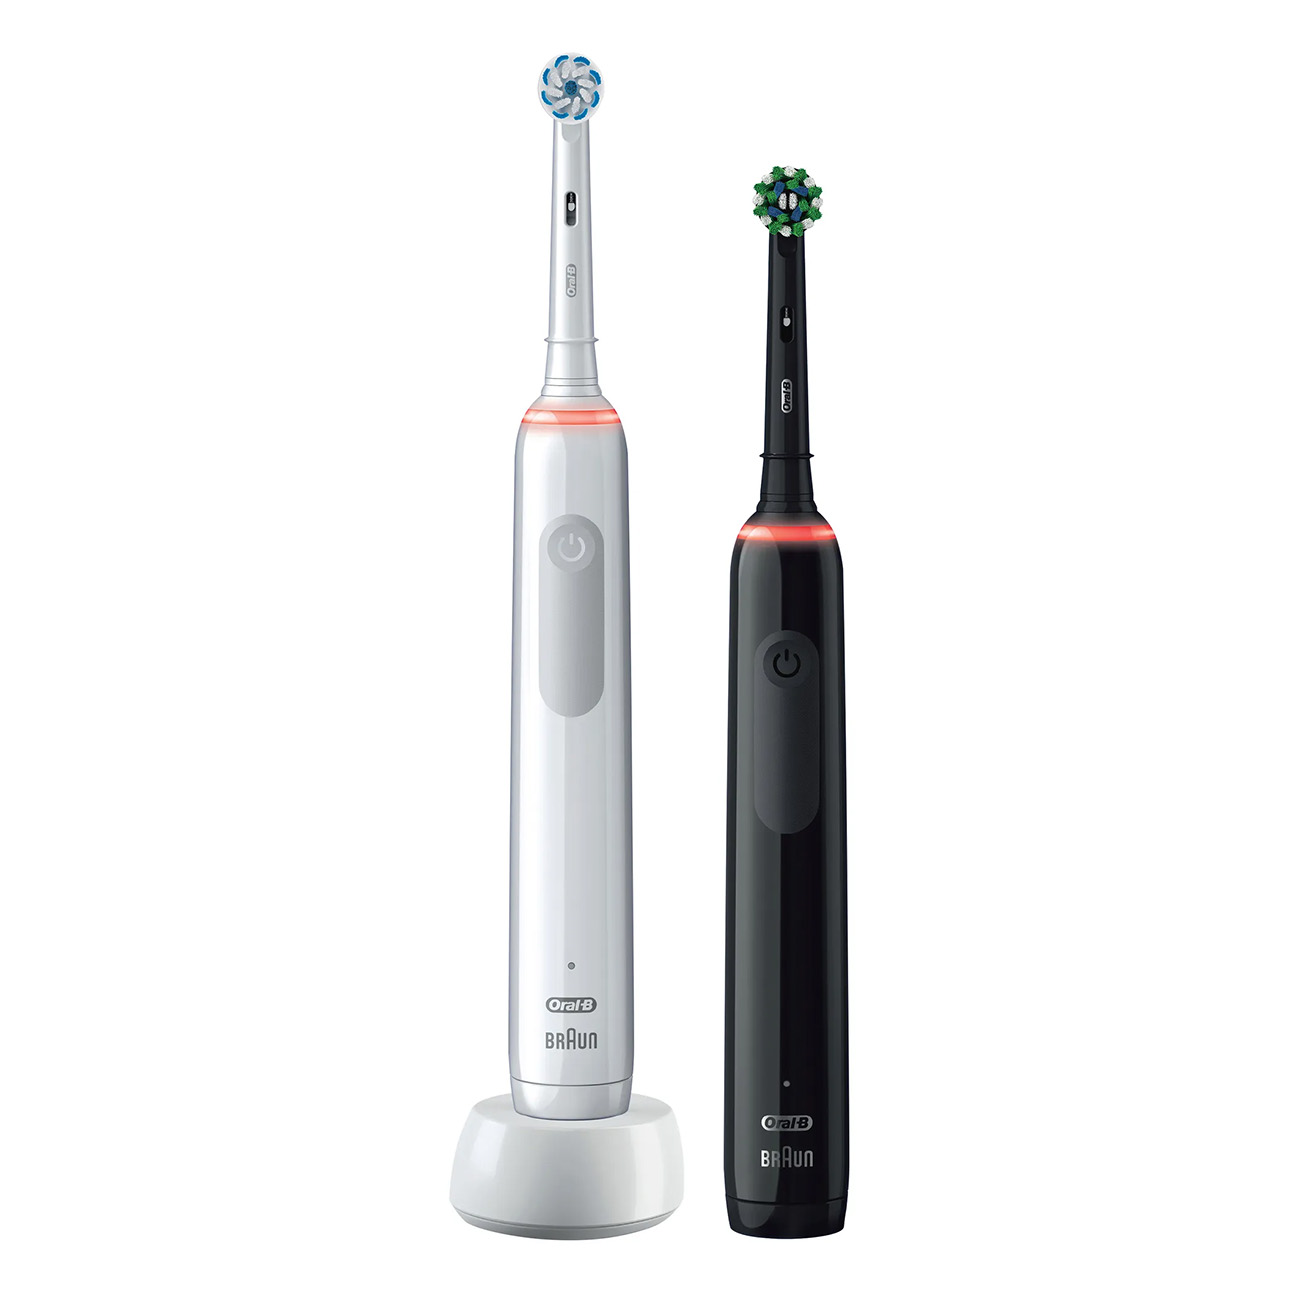 ORAL-B Pro 3 Zahnbürste Elektrische weiß 3900